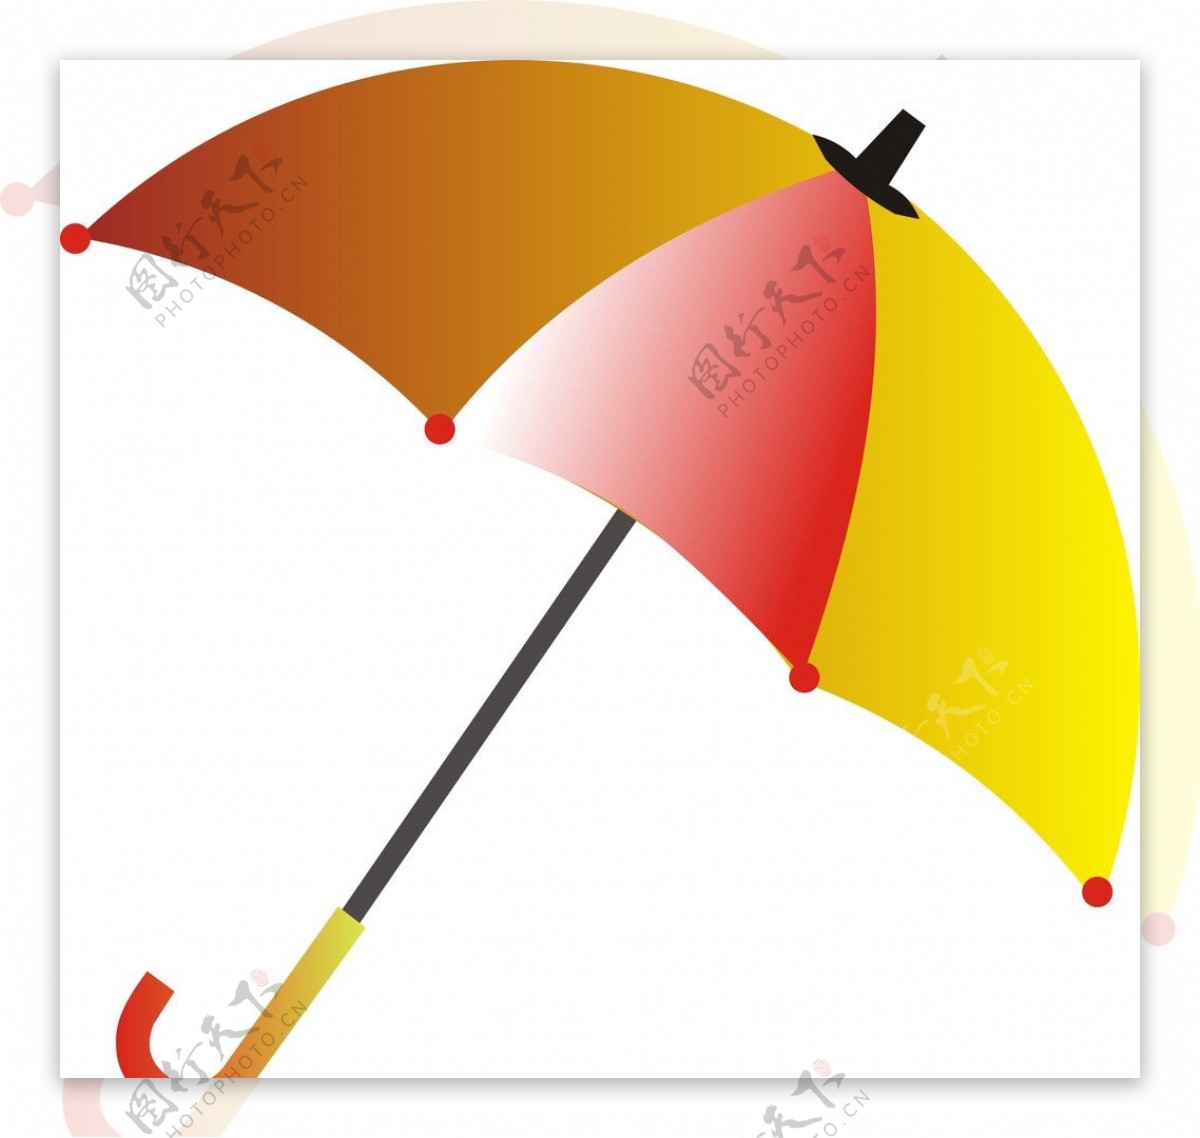 雨伞图片